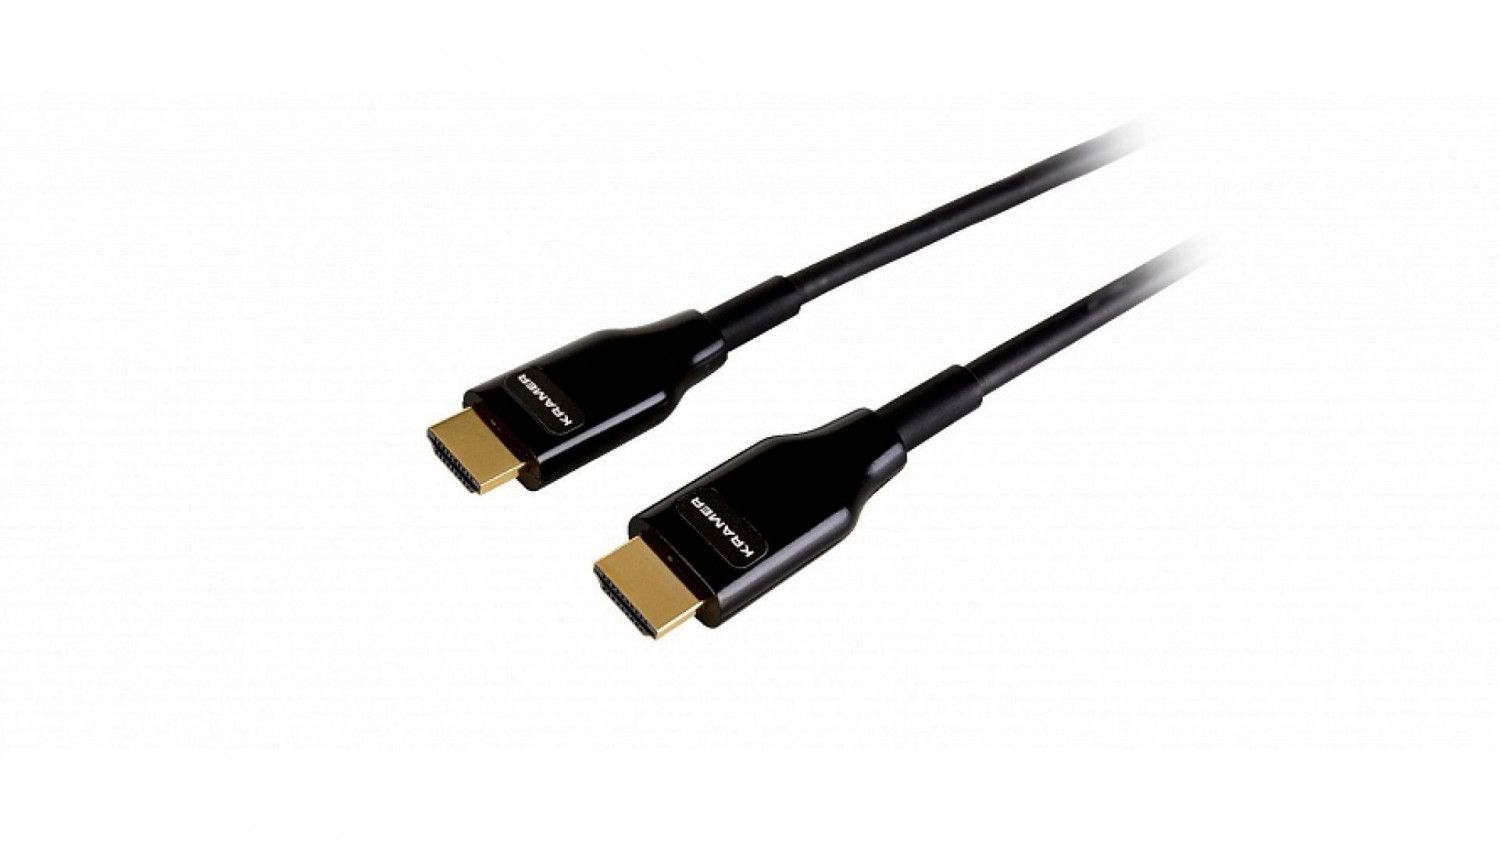 Активный малодымный армированный оптический кабель HDMI для арендных и выставочных мероприятий, поддержка 4К 60 Гц (4:4:4), 10 м Kramer Electronics CRS-PlugNView-H-33